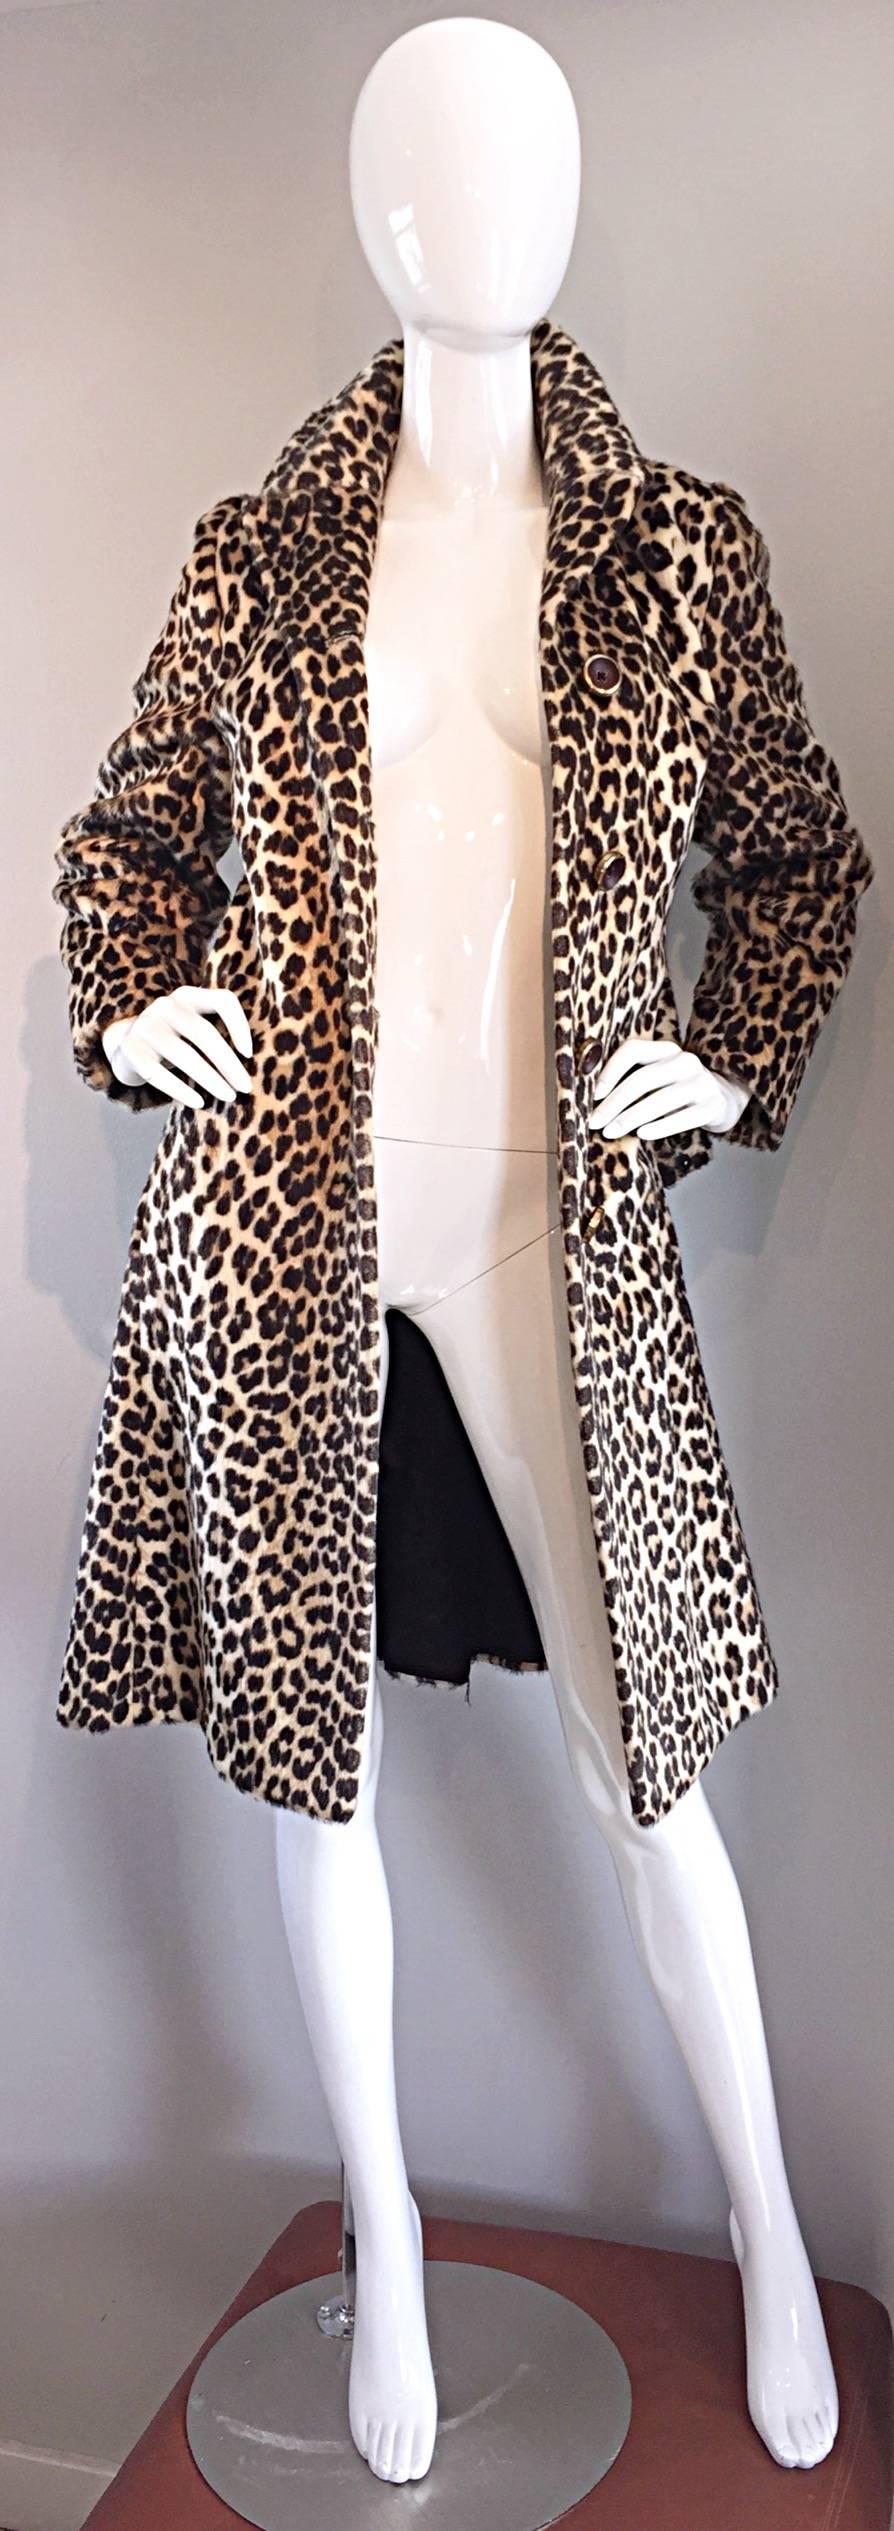 karl lagerfeld leopard coat